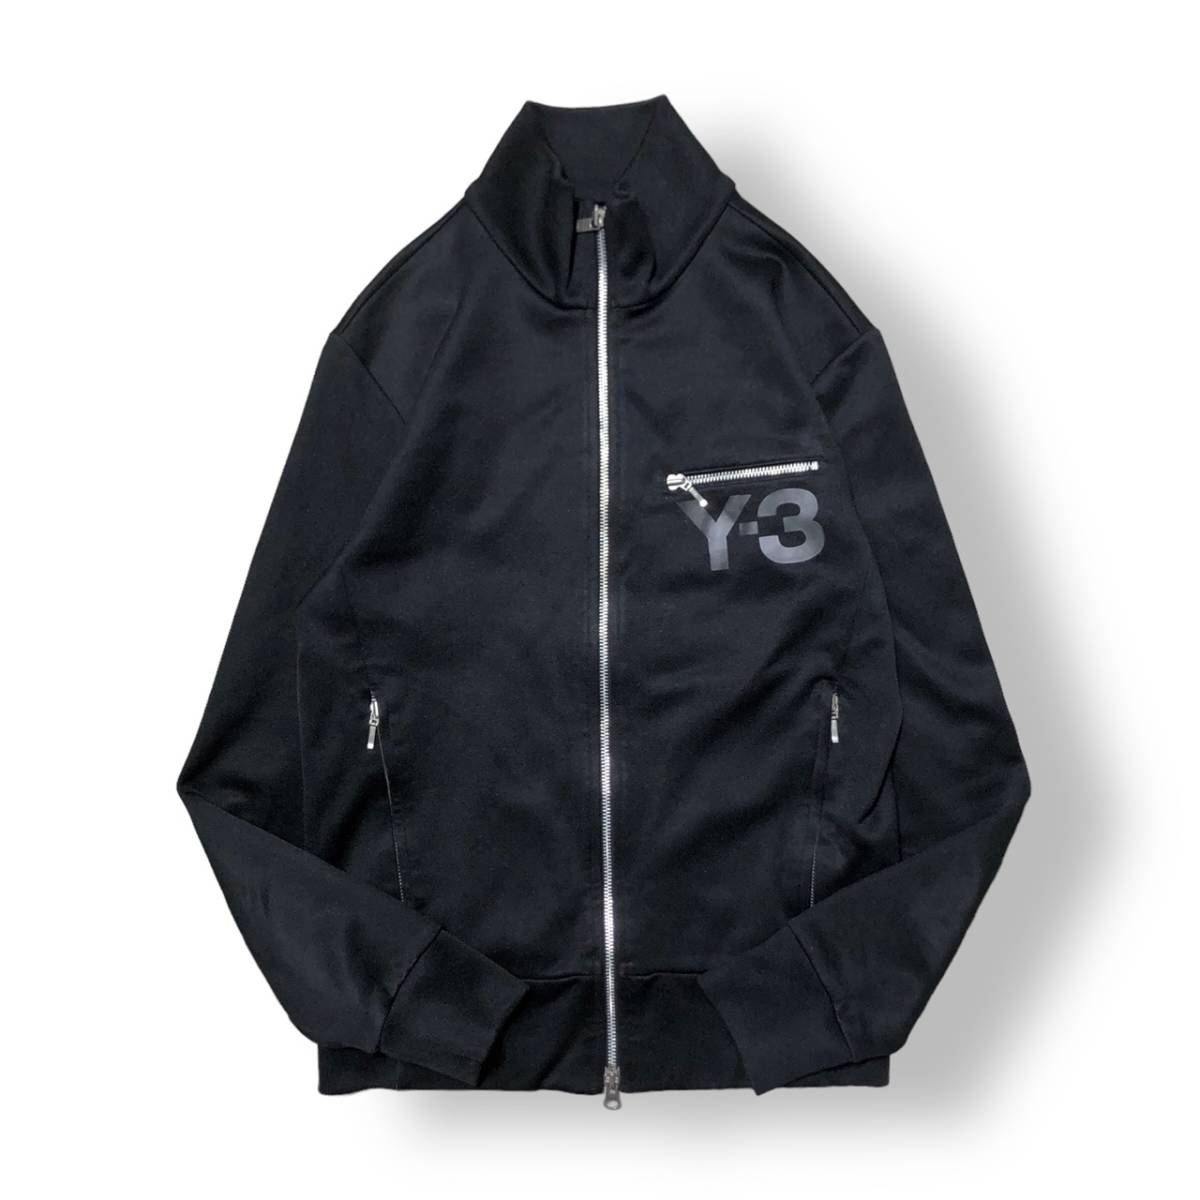 05ss Y-3 logo Track jacket ロゴトラック ジャージ Sサイズ ワイスリー 店舗受取可